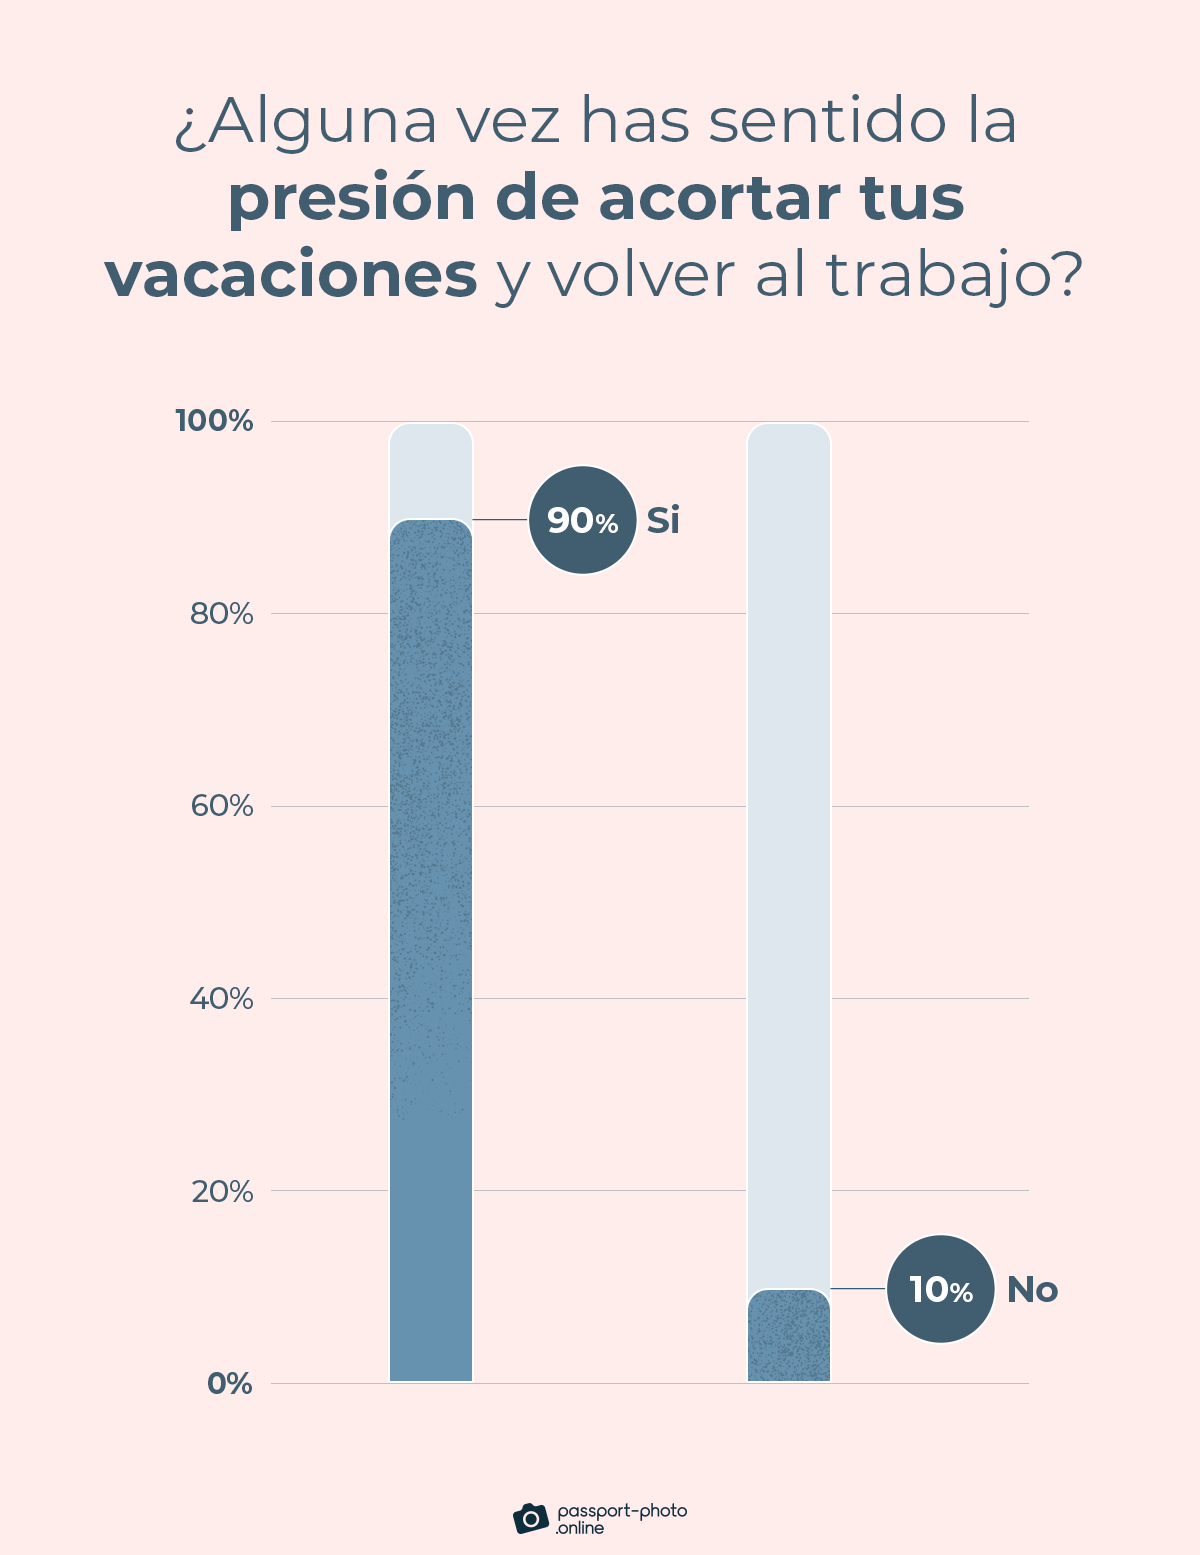 El 90% de los empleados se han sentido presionados para acortar sus vacaciones y volver al trabajo al menos una vez en la vida